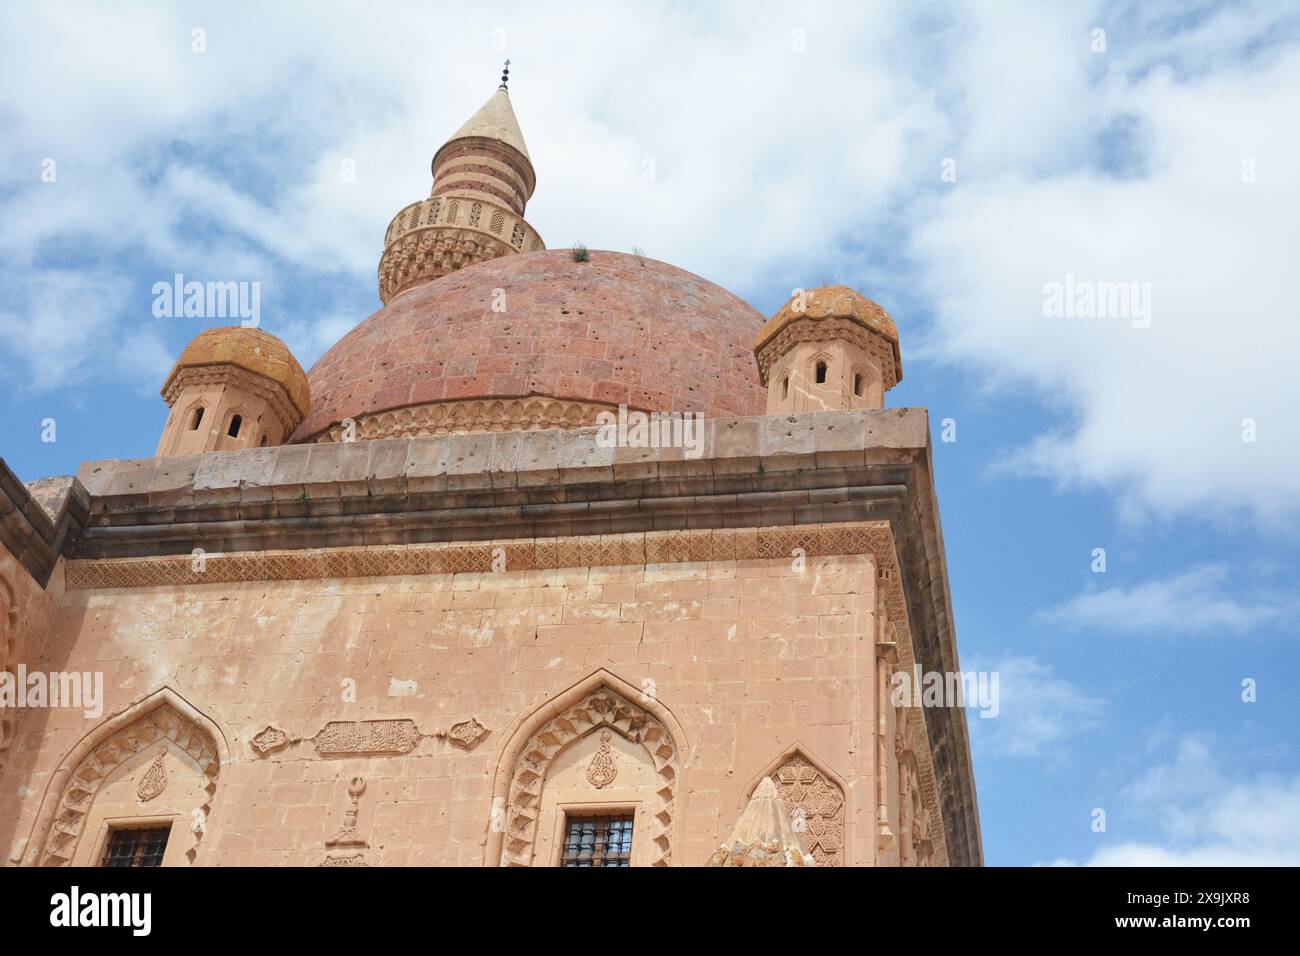 Vecchio edificio islamico o moschea con una cupola in cima e versi del Corano arabo, su sfondo cielo blu. palazzo ishak pasha ad agri, turchia. Foto Stock